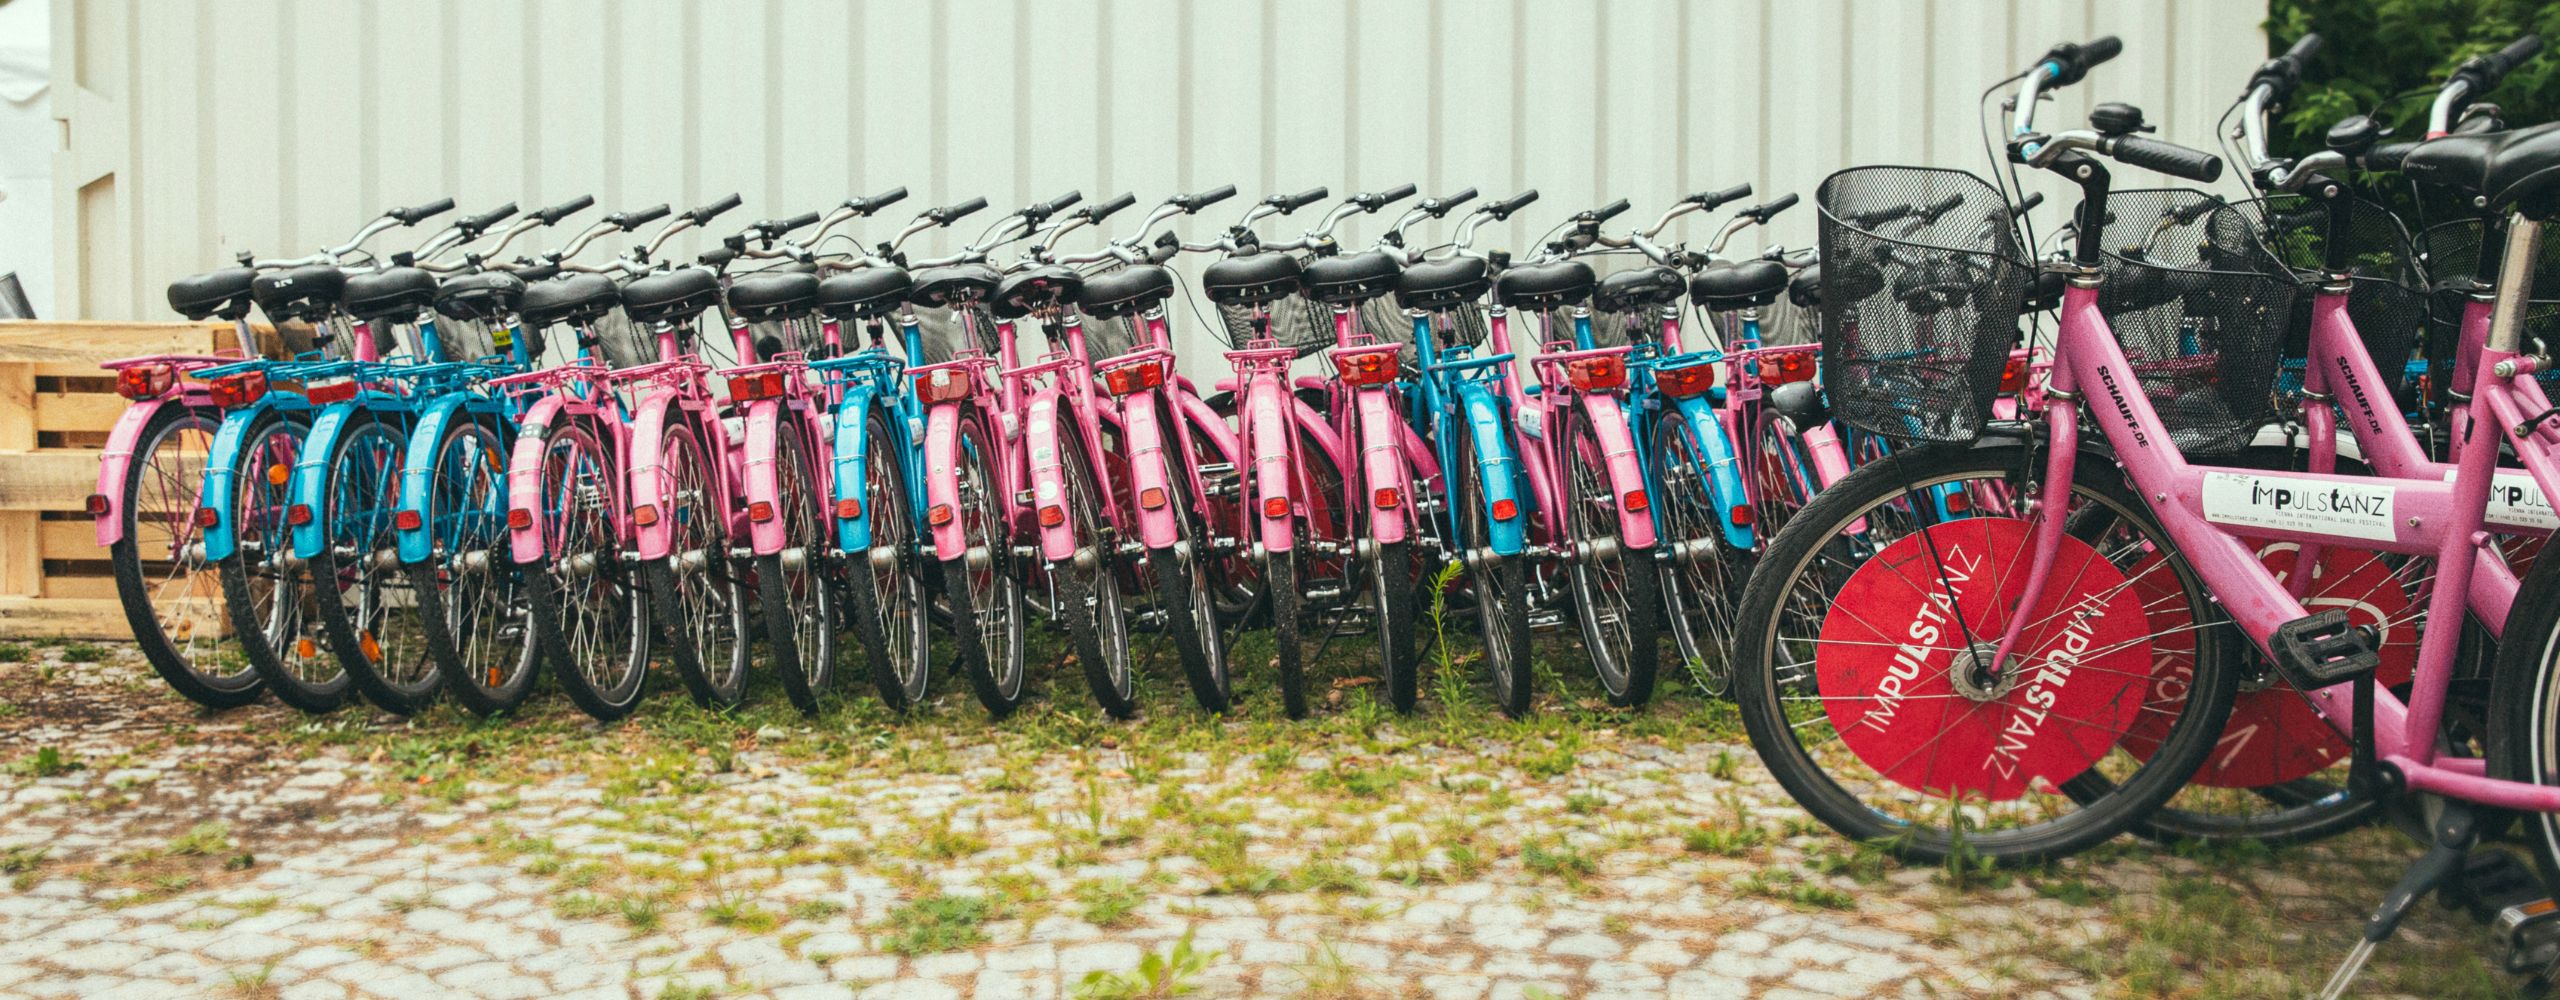 viele ImPulsTanz-Fahrräder